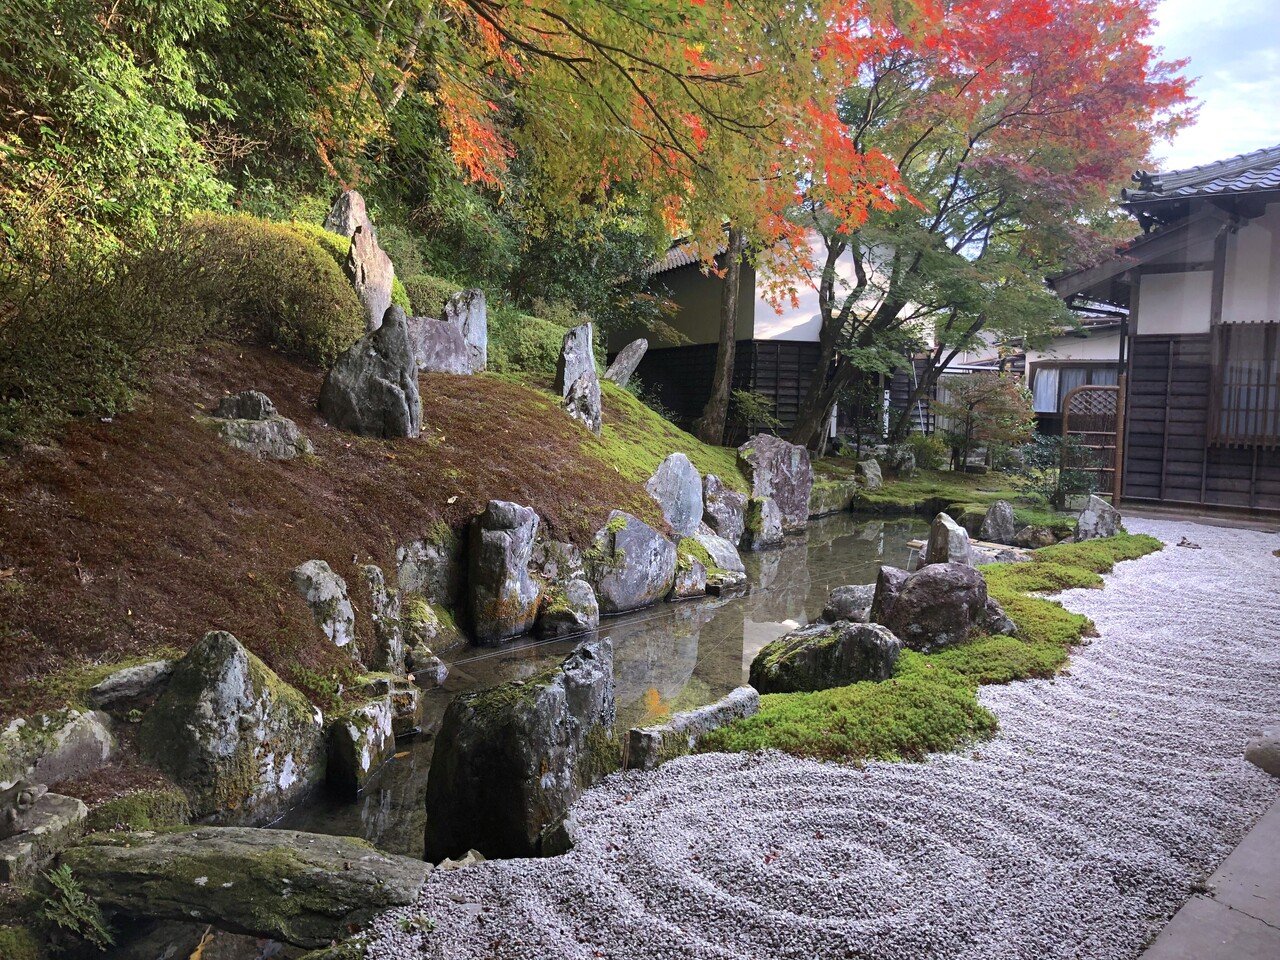 美しい苔の庭】完全版・西日本編。1000箇所以上の日本庭園から厳選して 